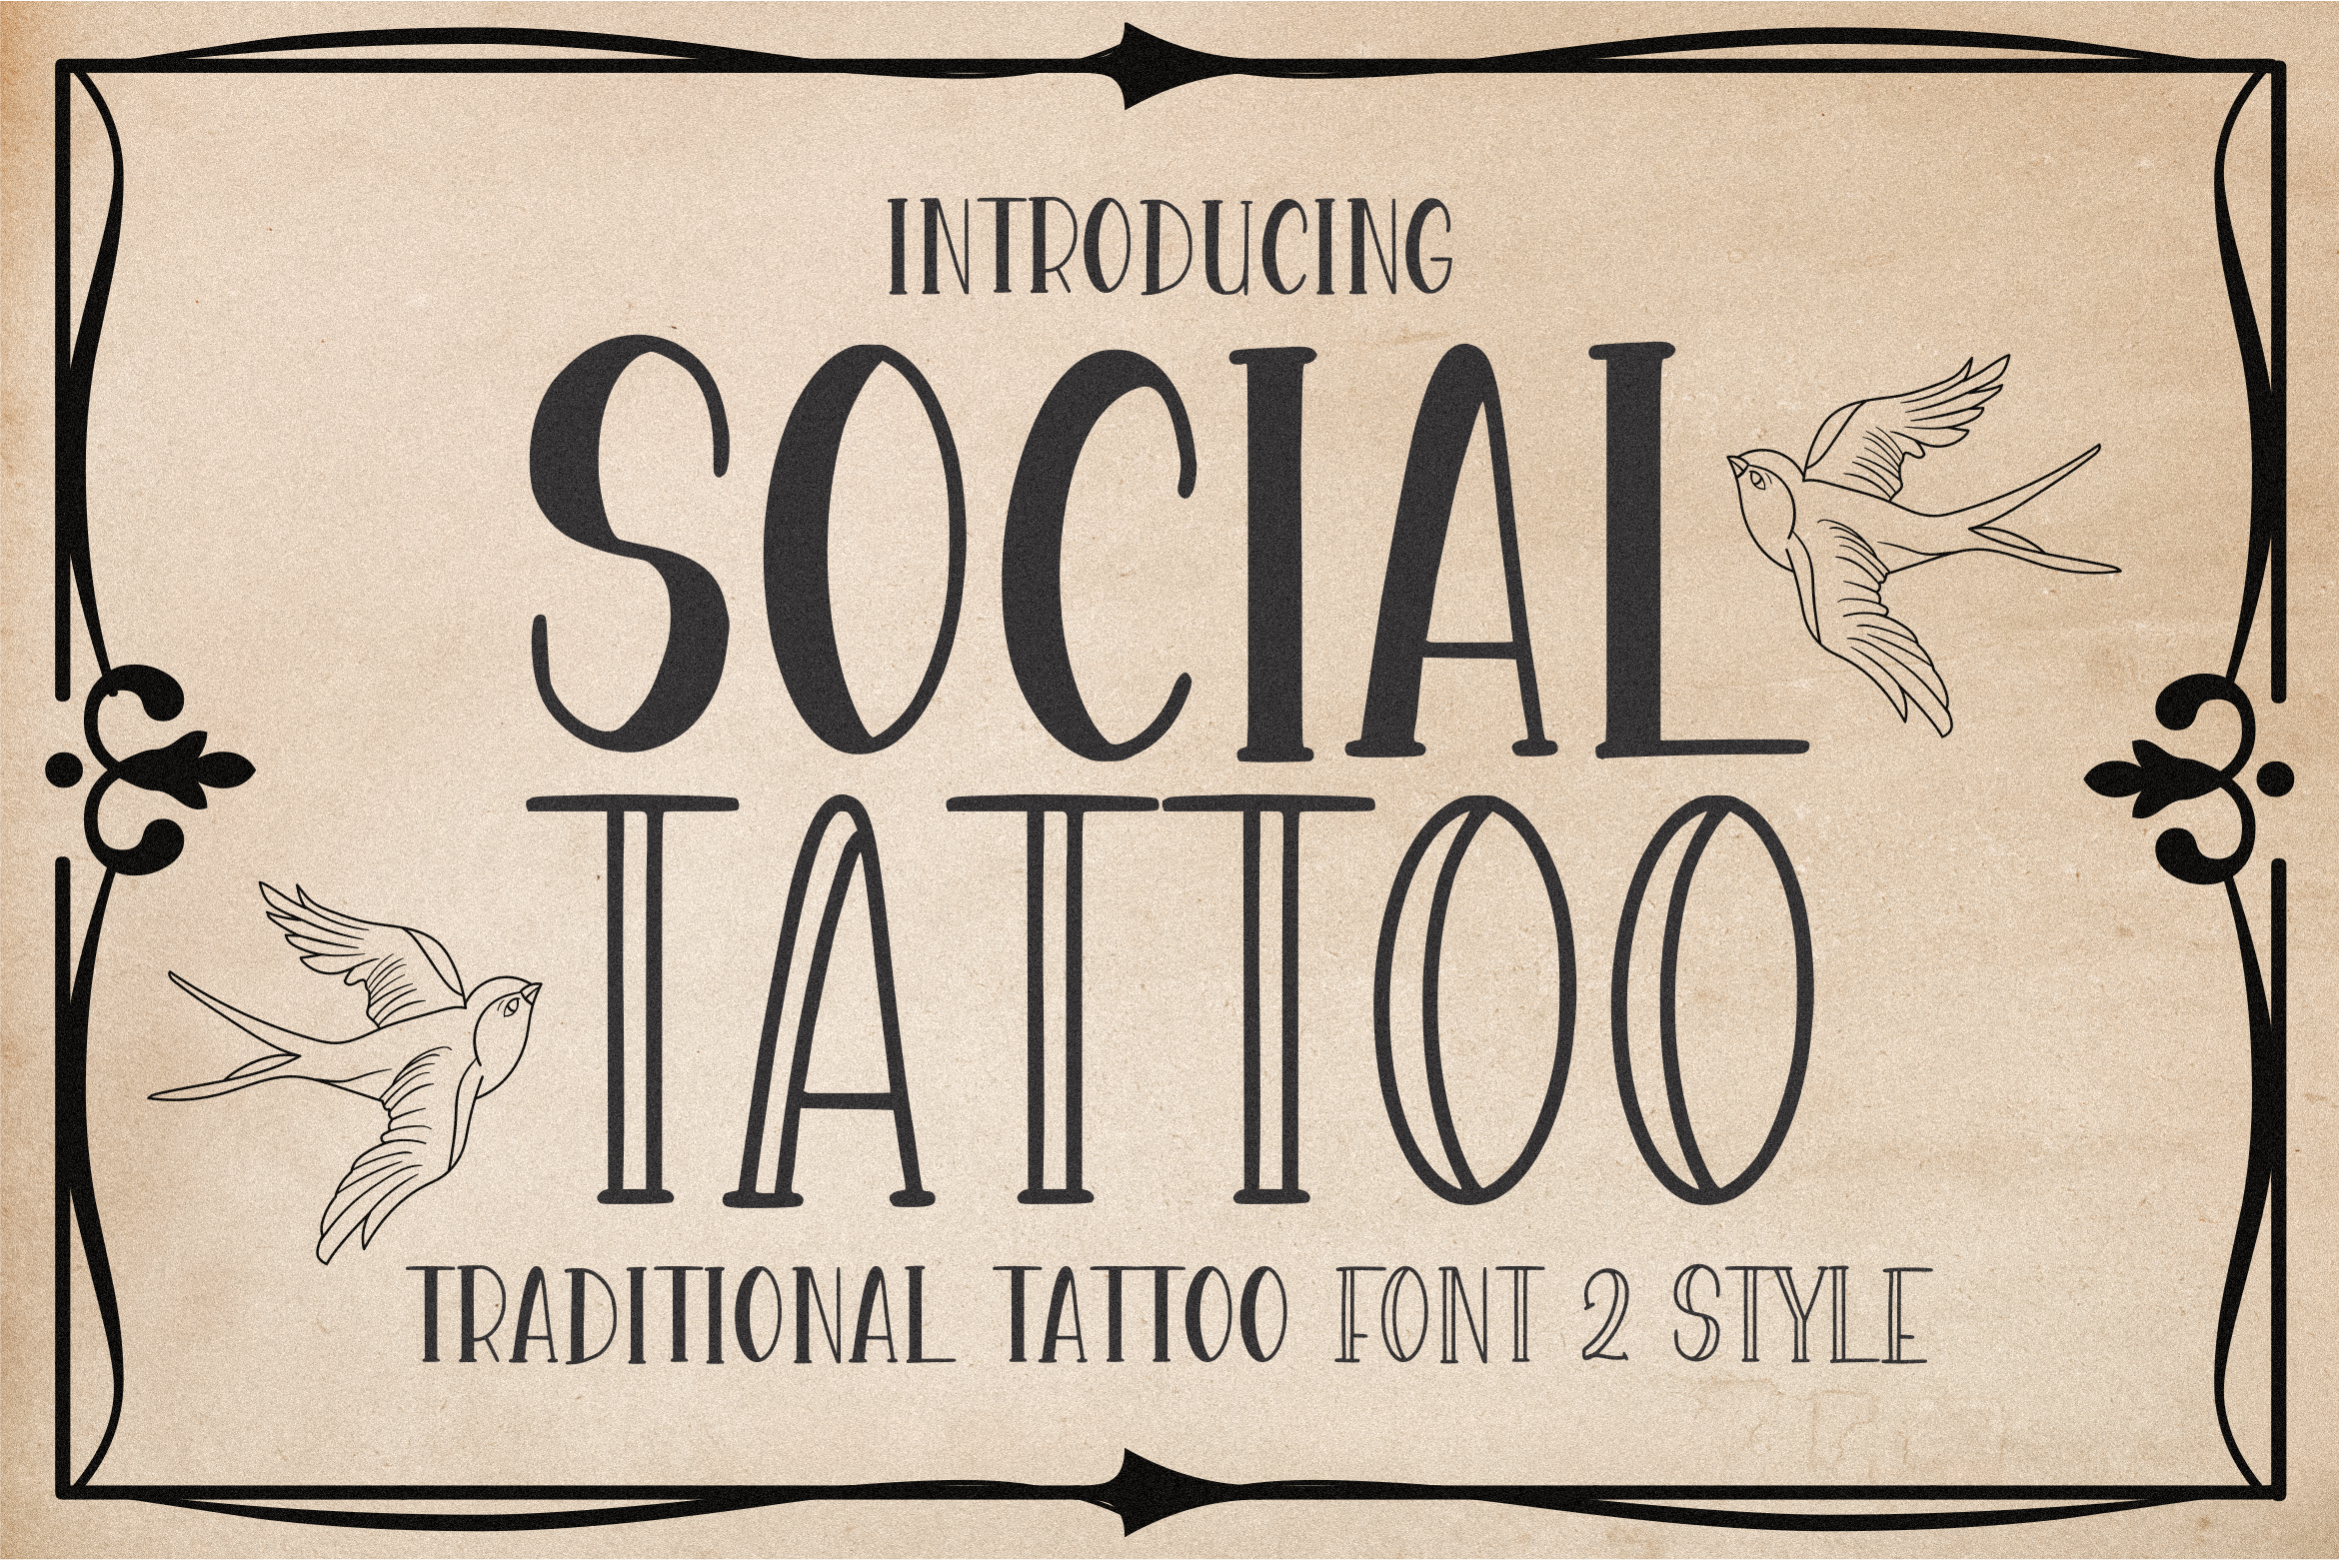 Social Tattoo